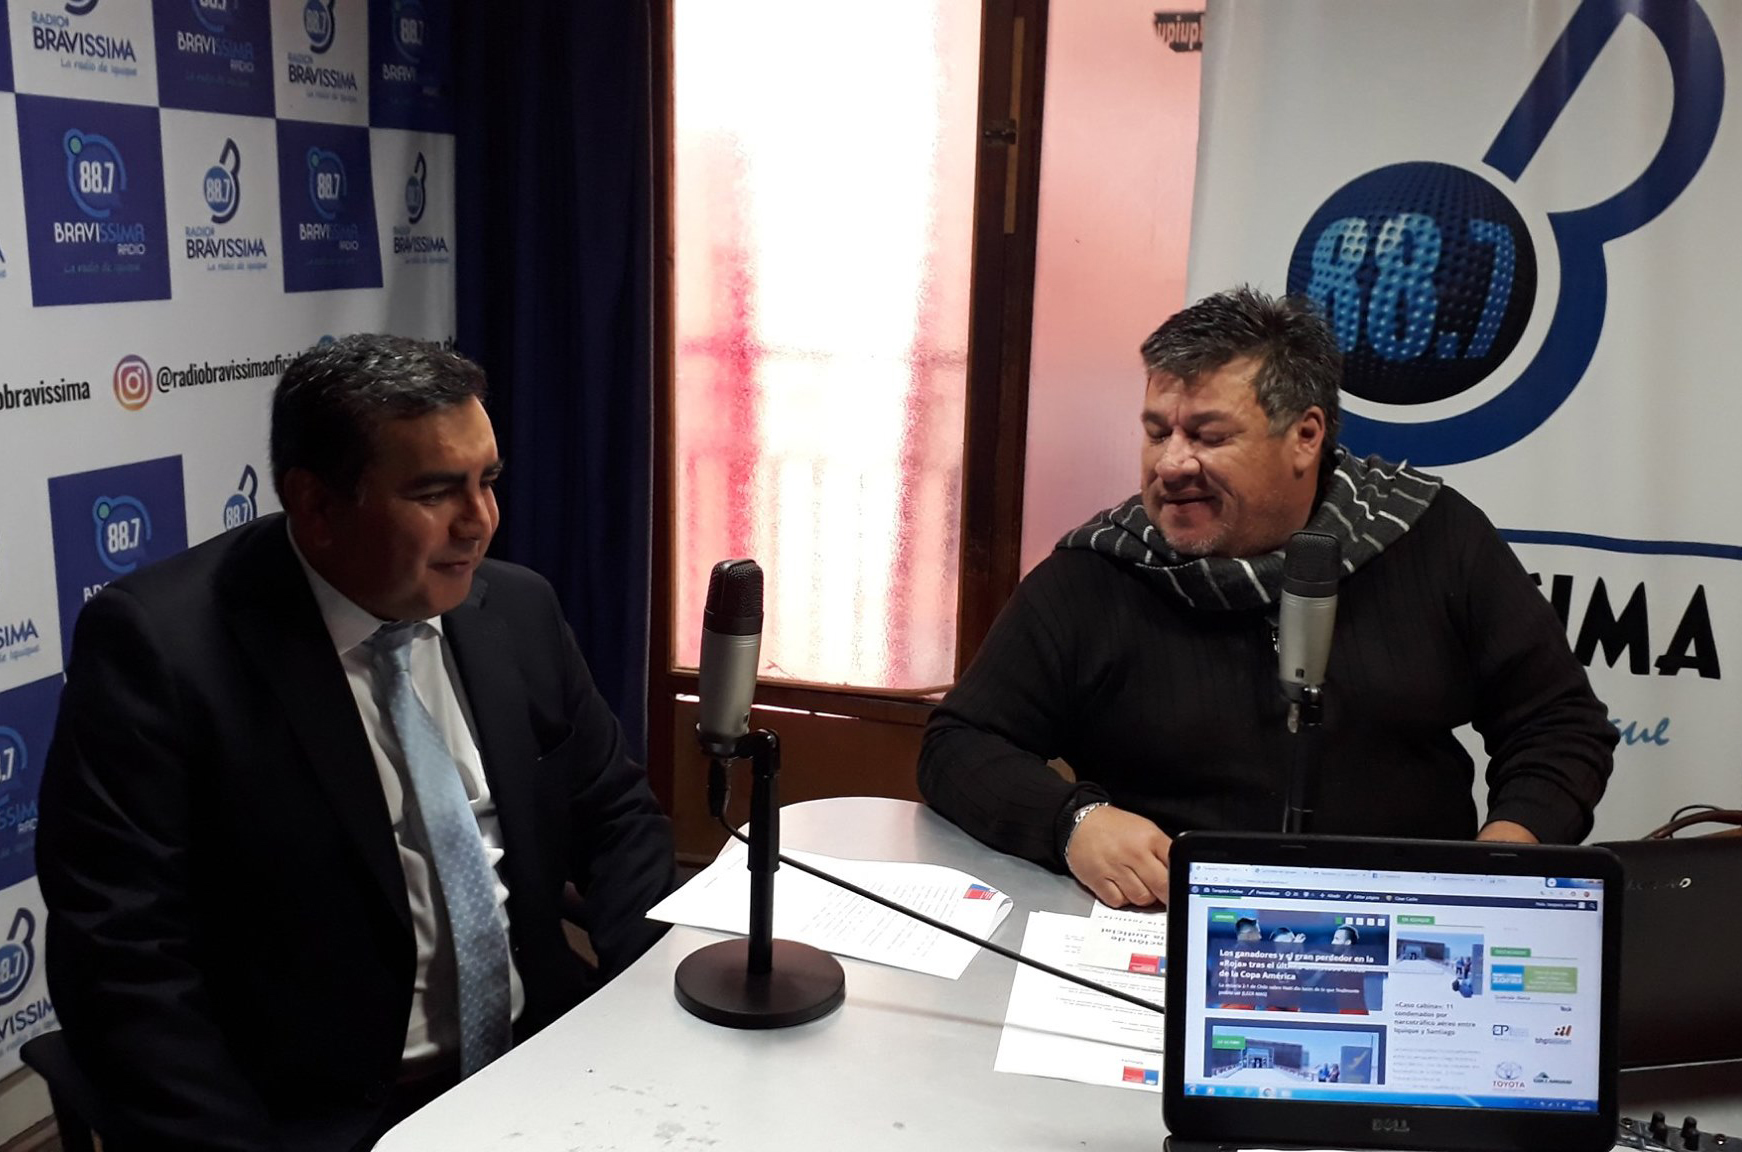 Oficina de Defensa Laboral de Tarapacá llega a Radio Bravissima